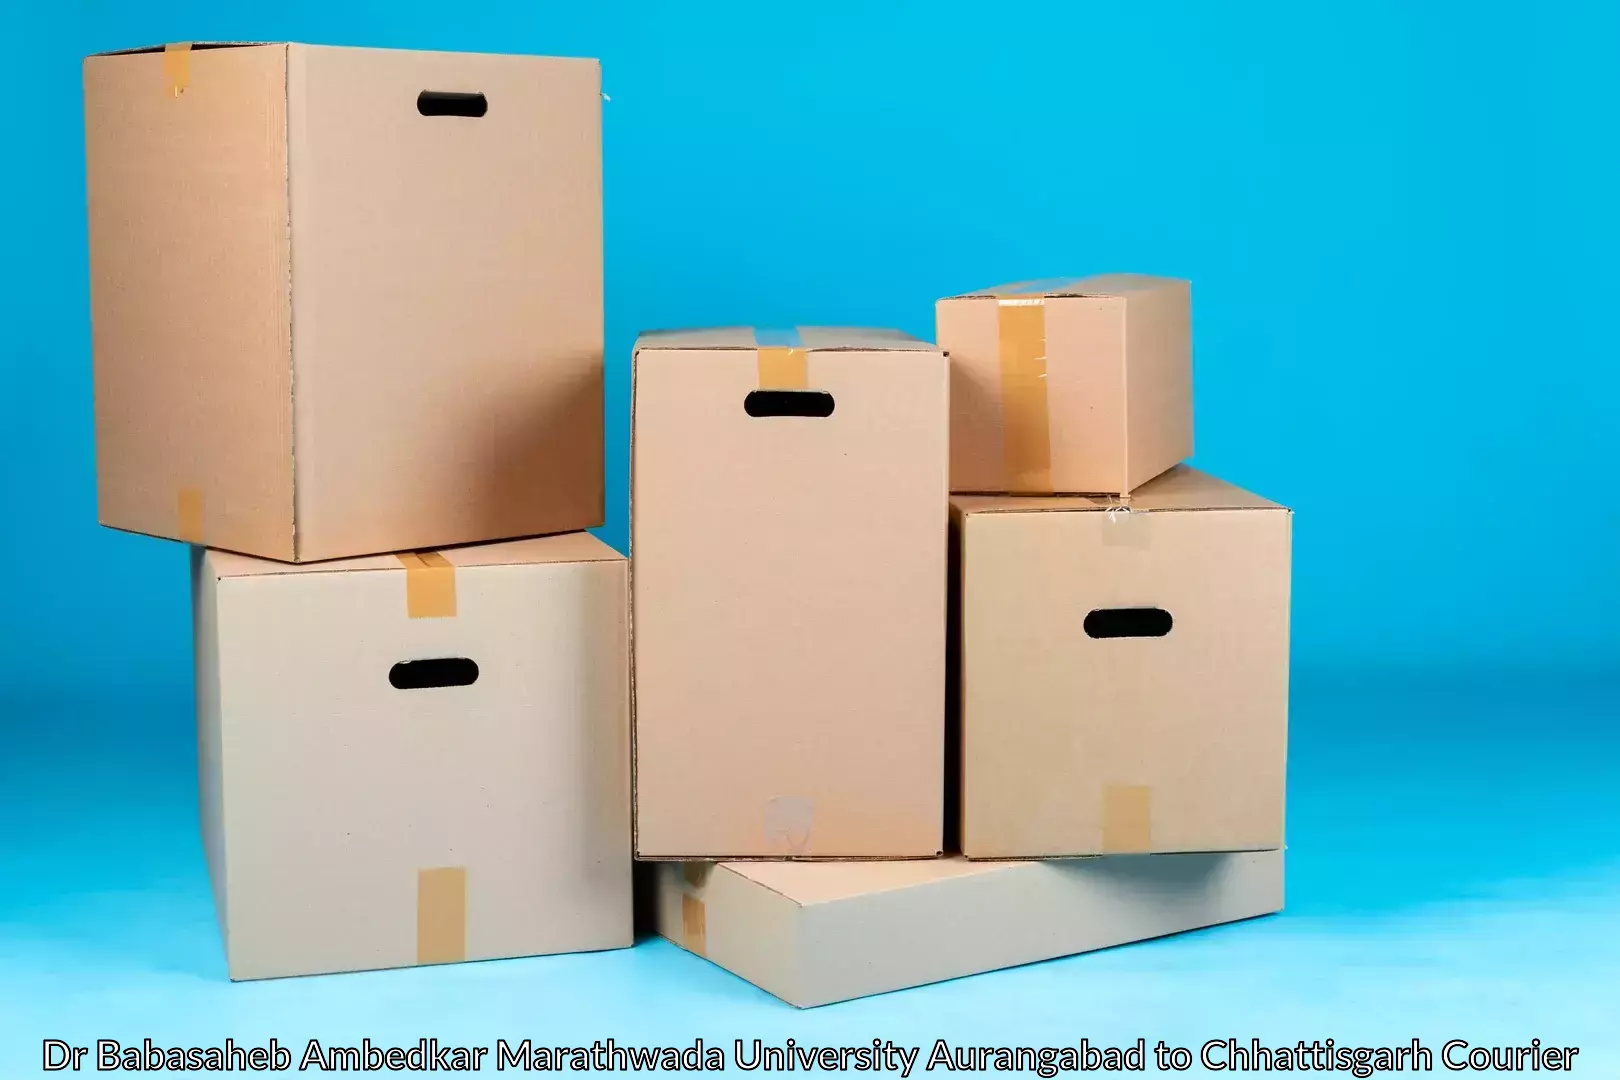 Furniture shipping services Dr Babasaheb Ambedkar Marathwada University Aurangabad to Nagri